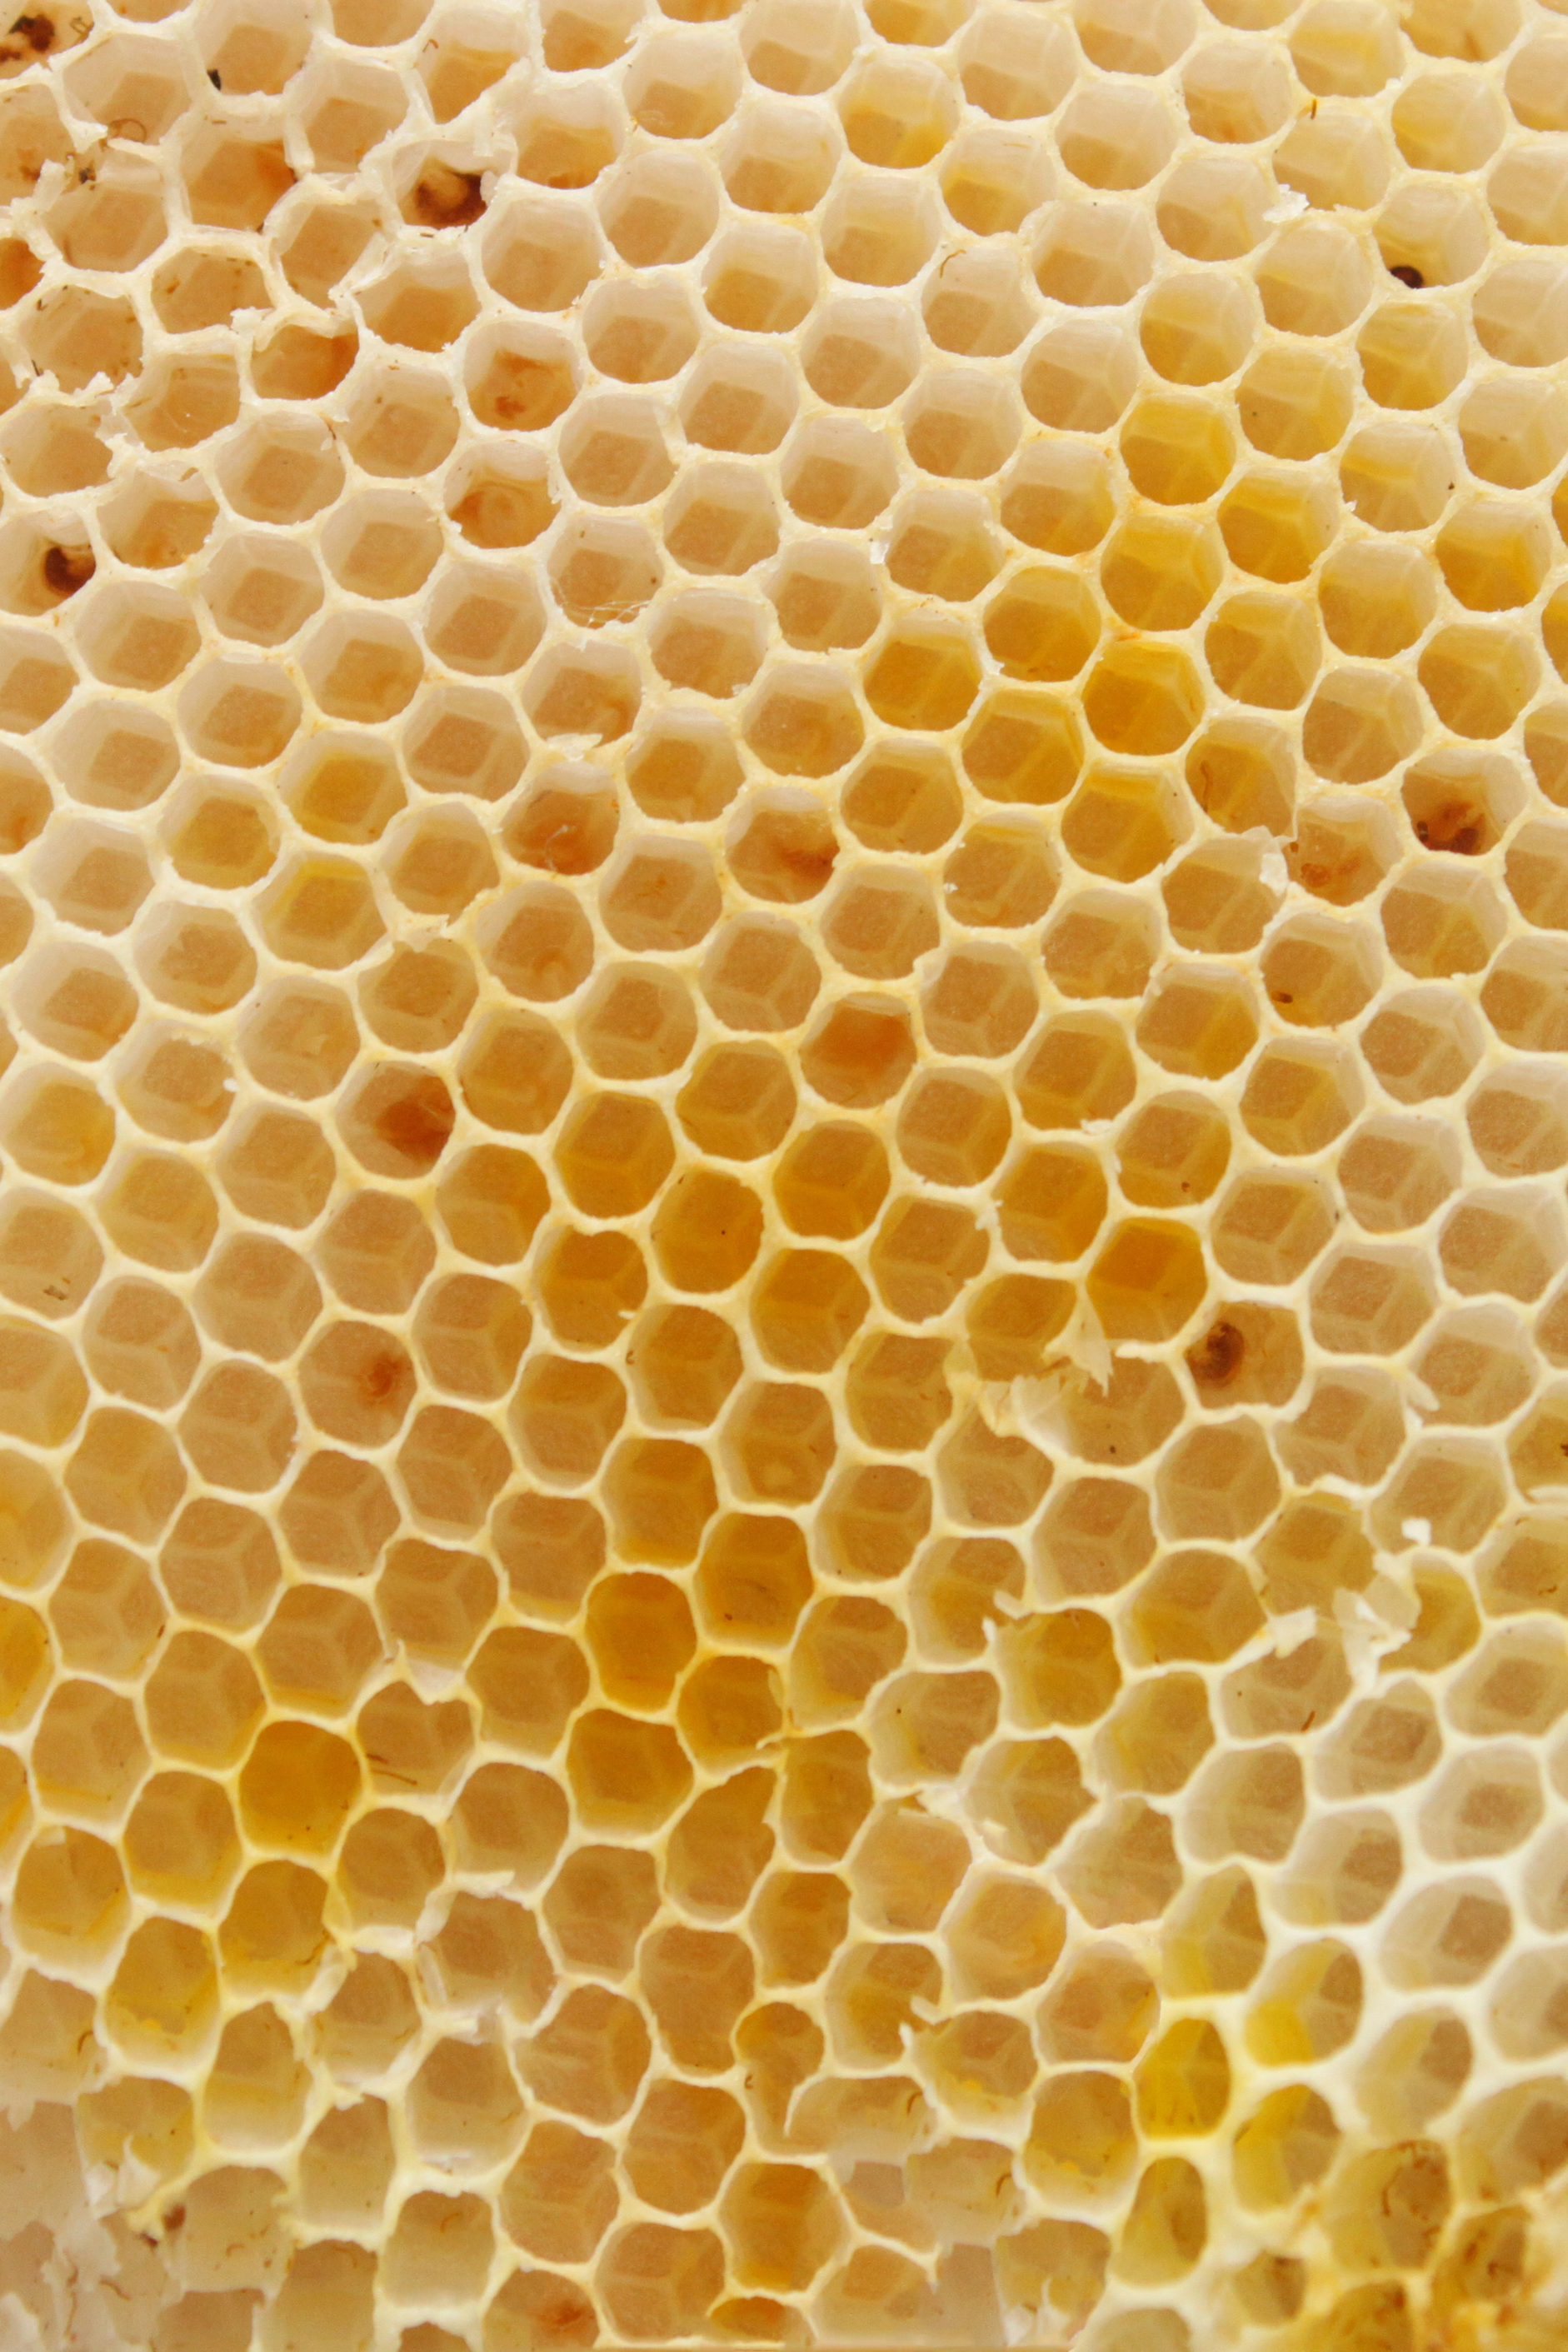 Beehive texture photo